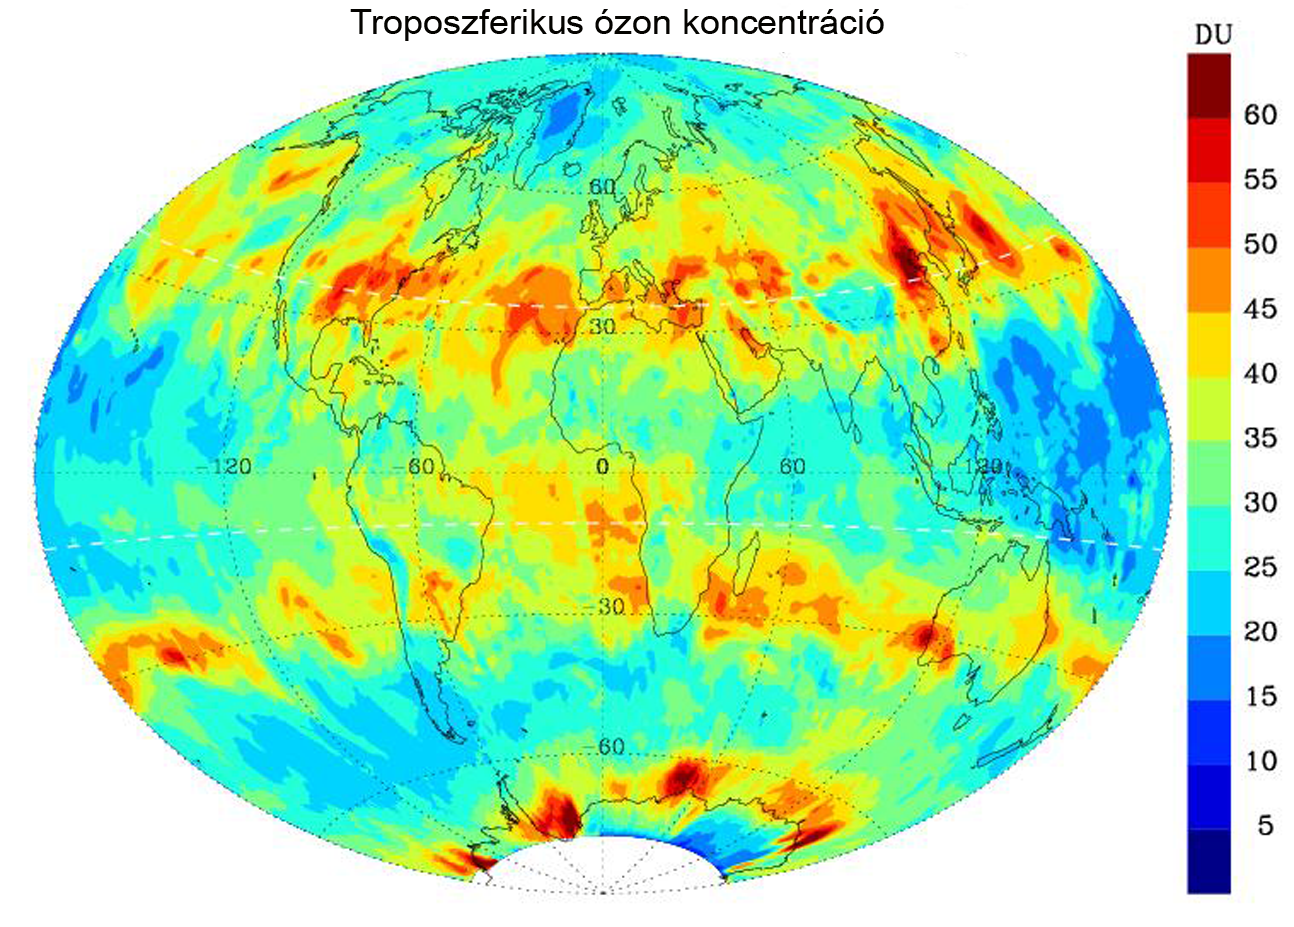 A troposzférikus ózon földrajzi széelsség szerinti eloszlása. (Forrás: Harvard-Smithsonian Center for Astrophysics).